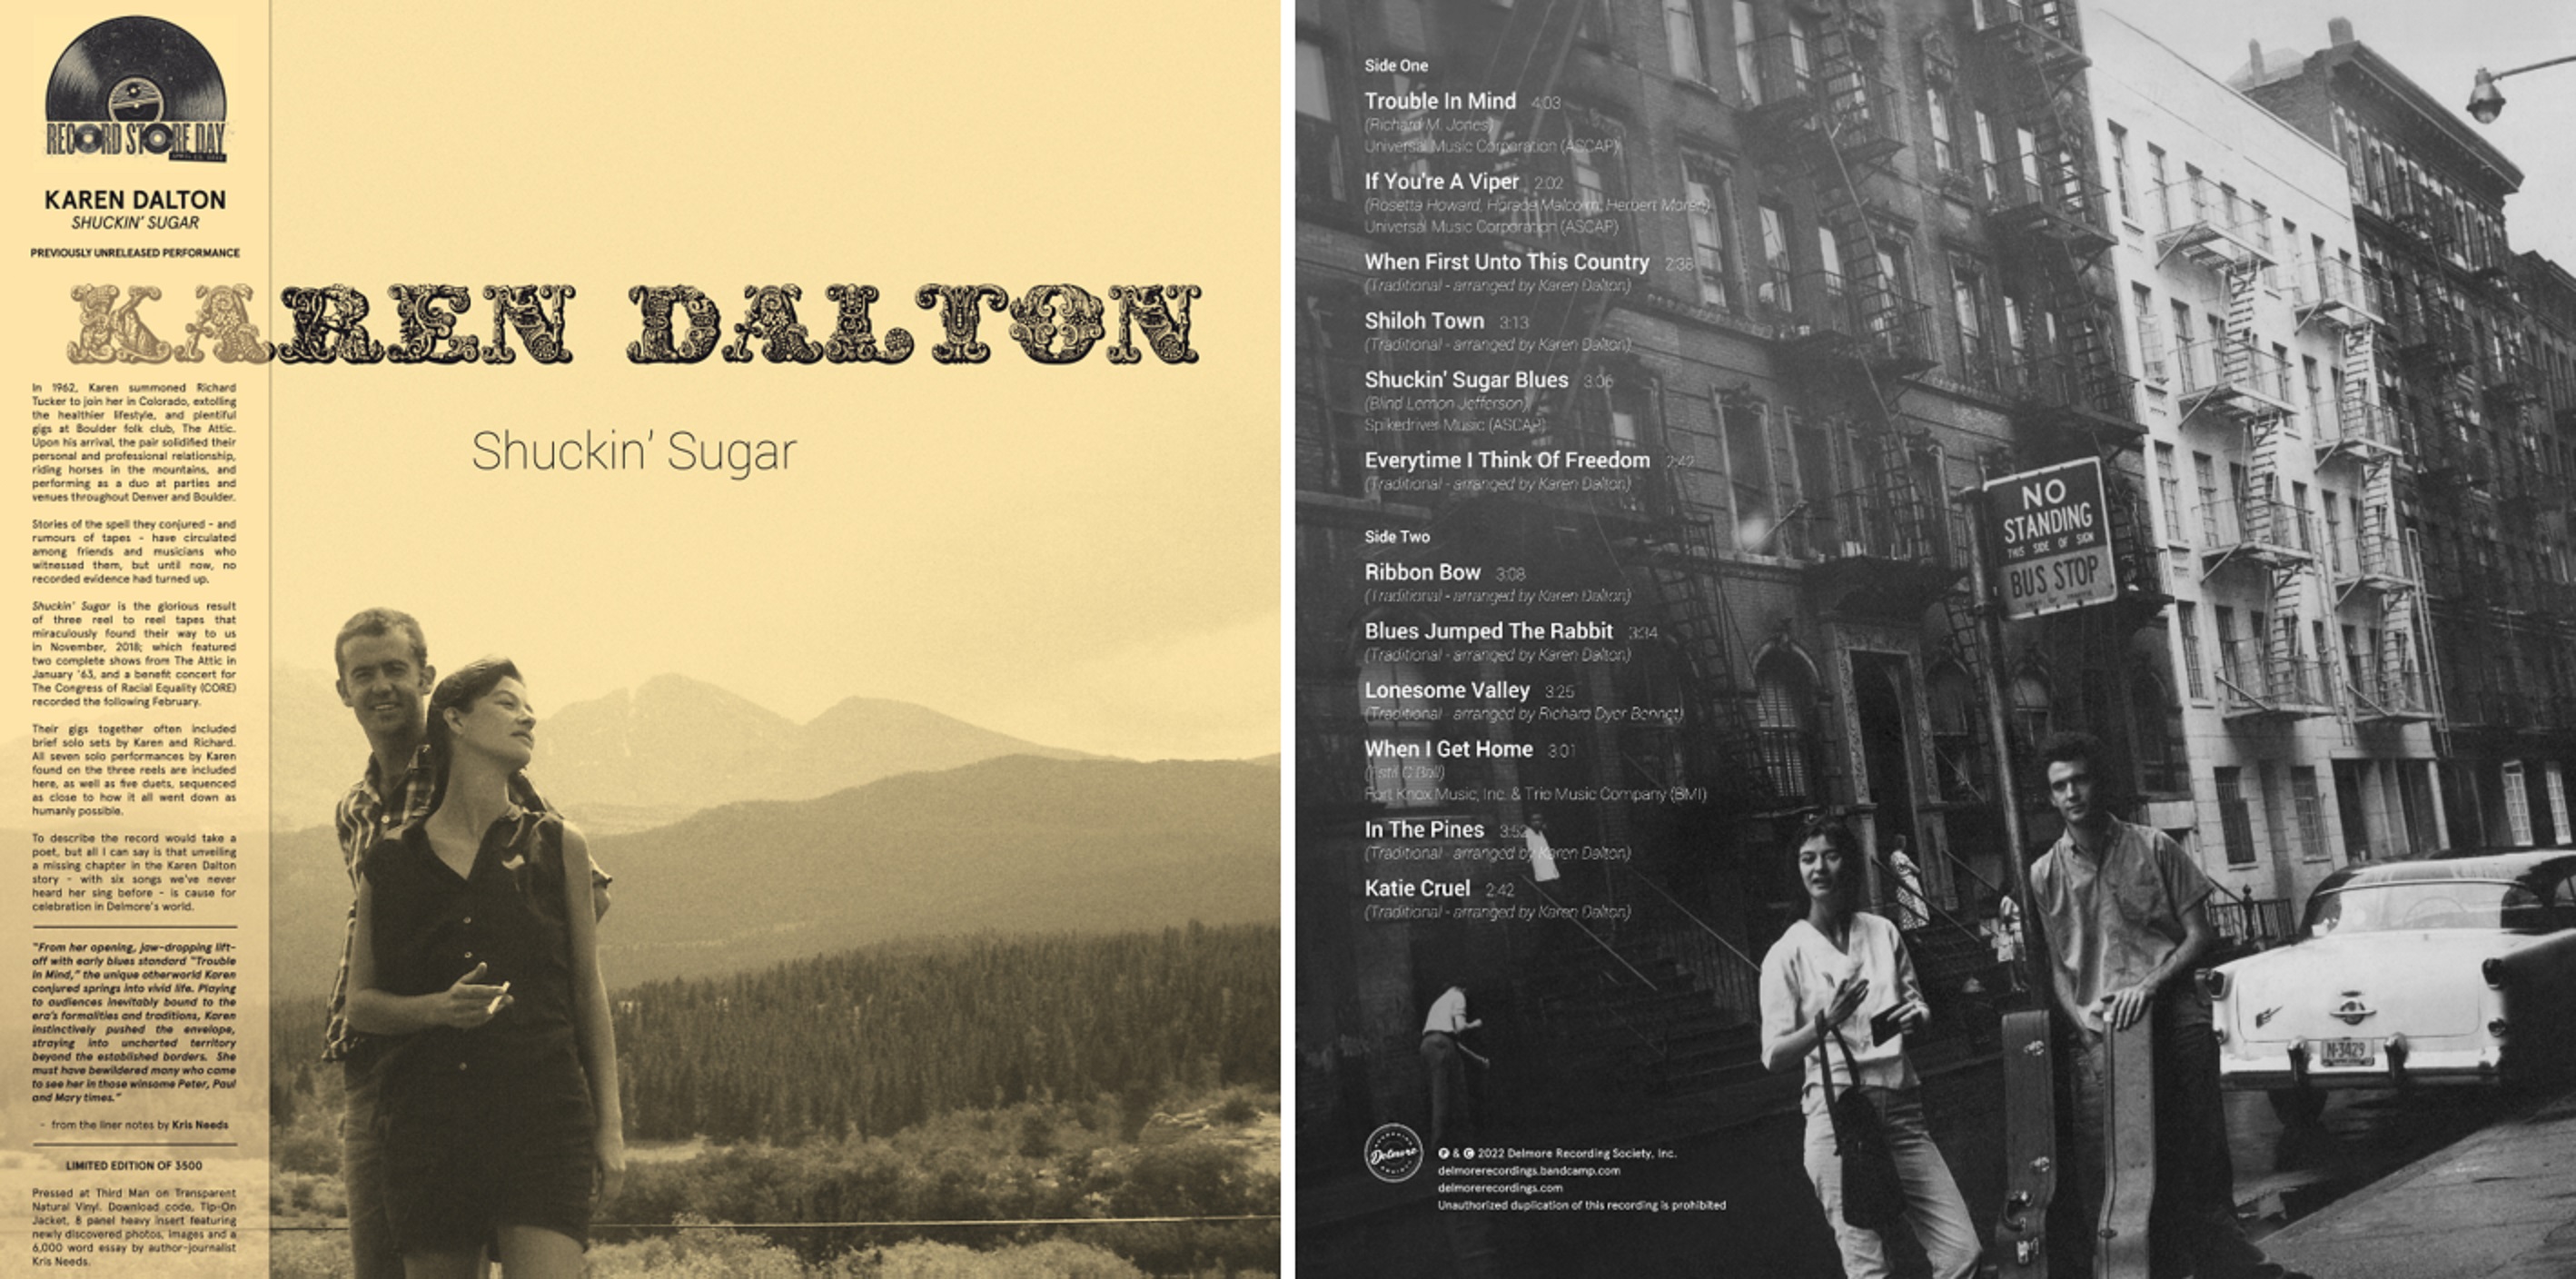 Delmore Recording Society Announces All-New Karen Dalton Collection